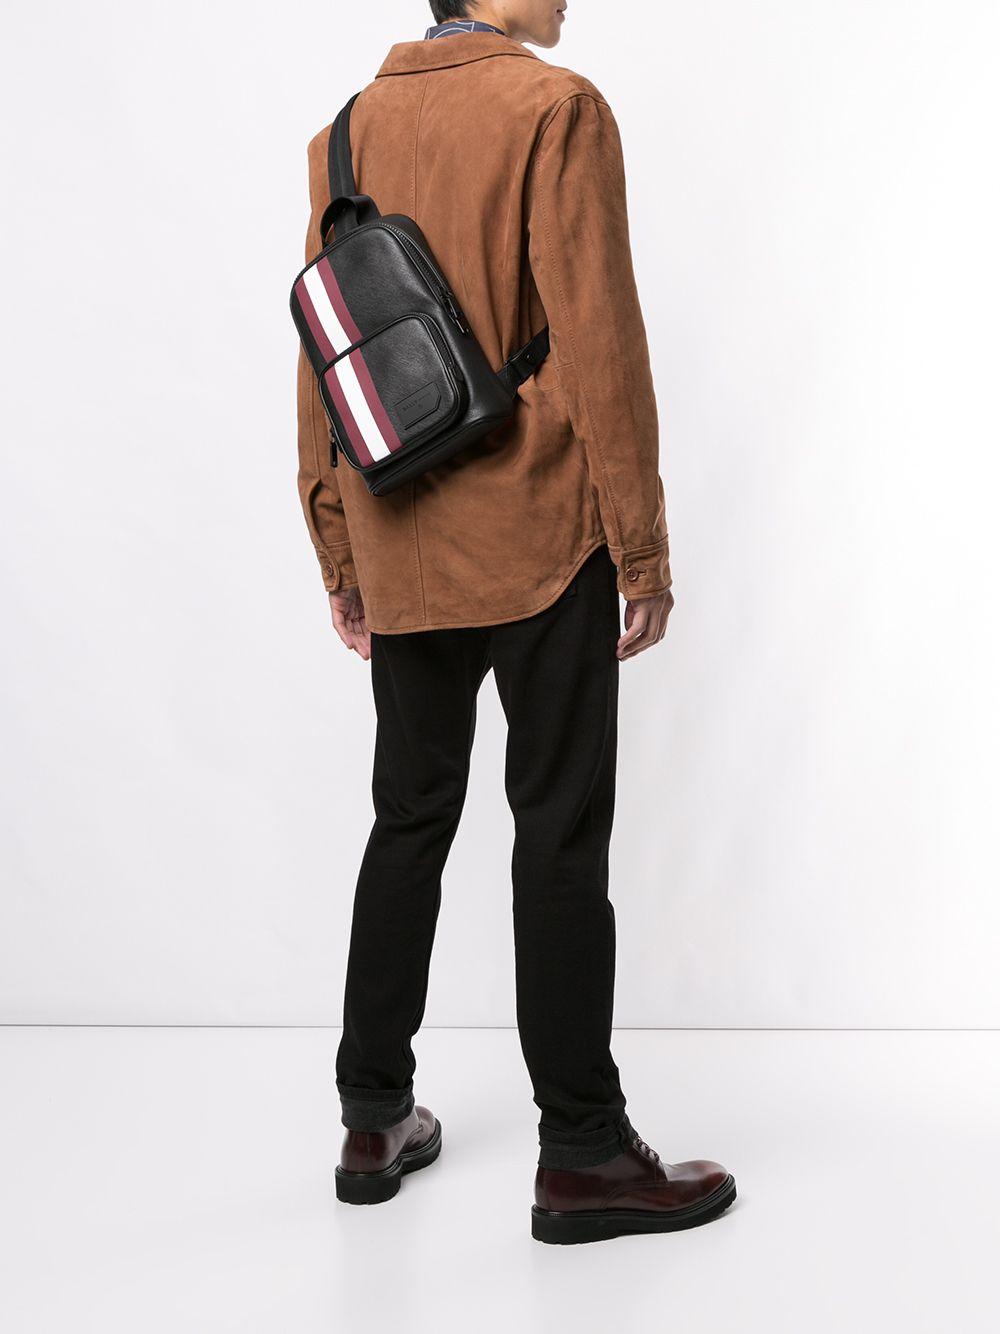 Bally Leather Colimar Sling Bag in Black for Men - Lyst